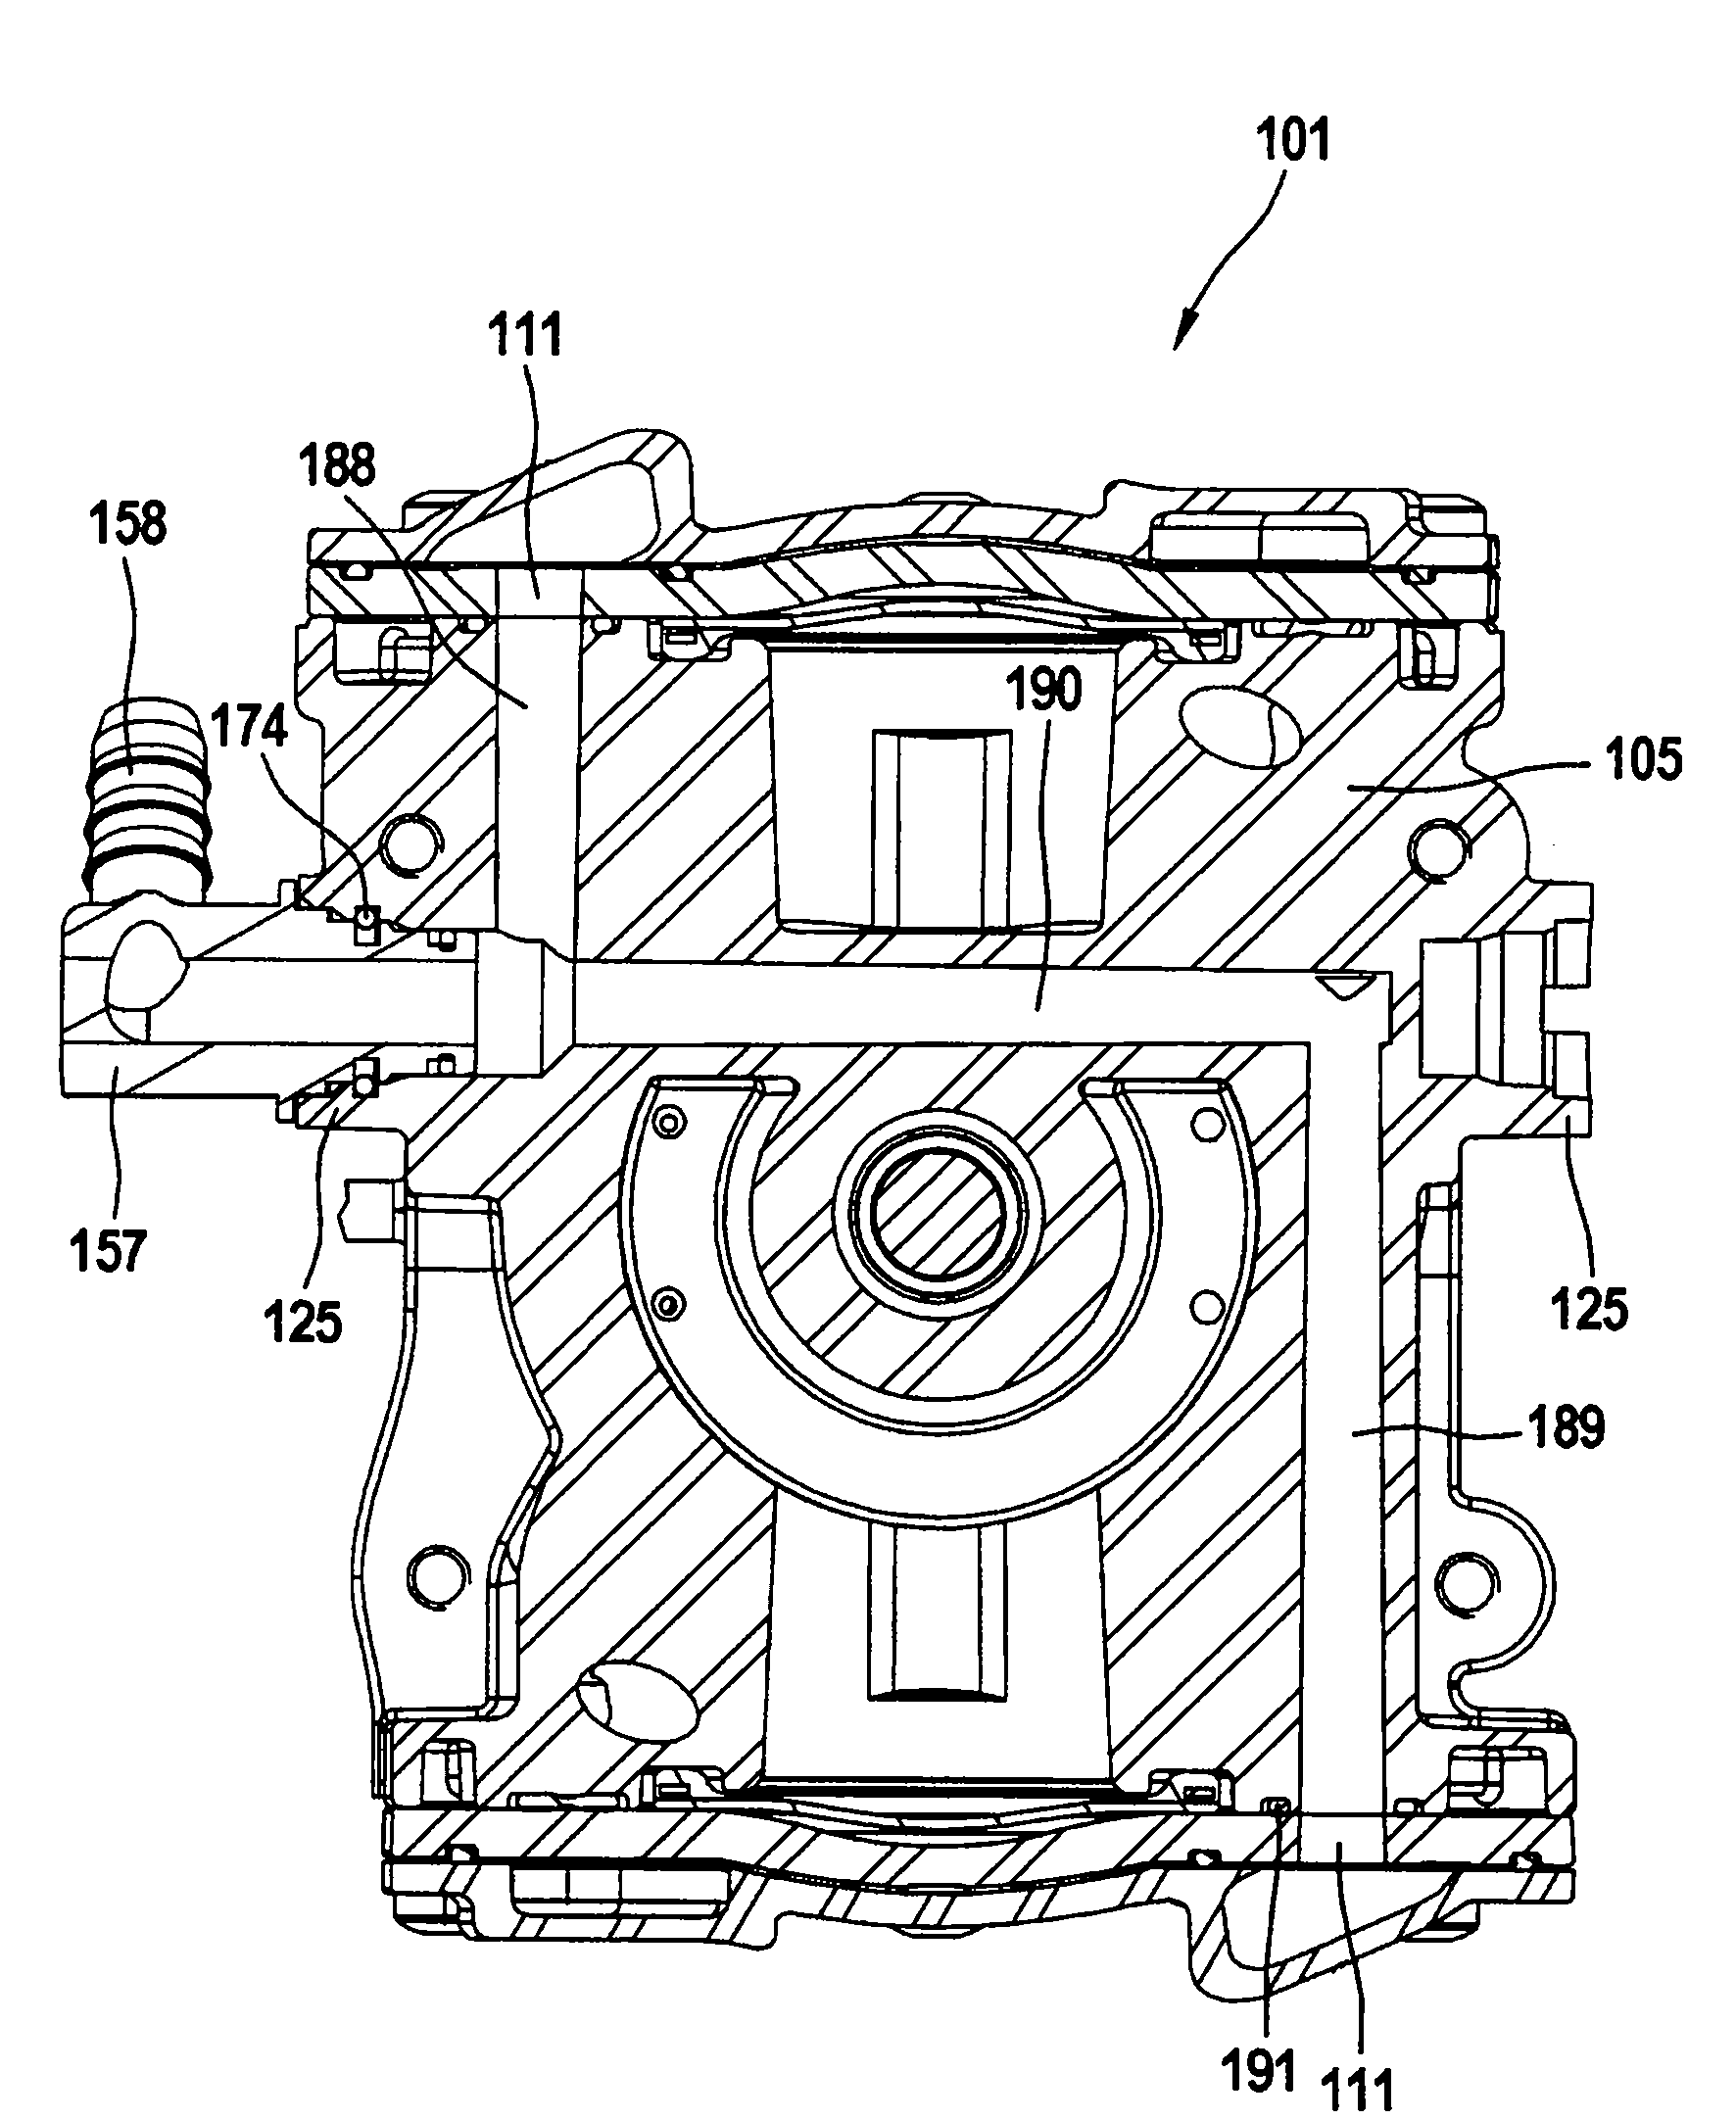 Motor-pump aggregate